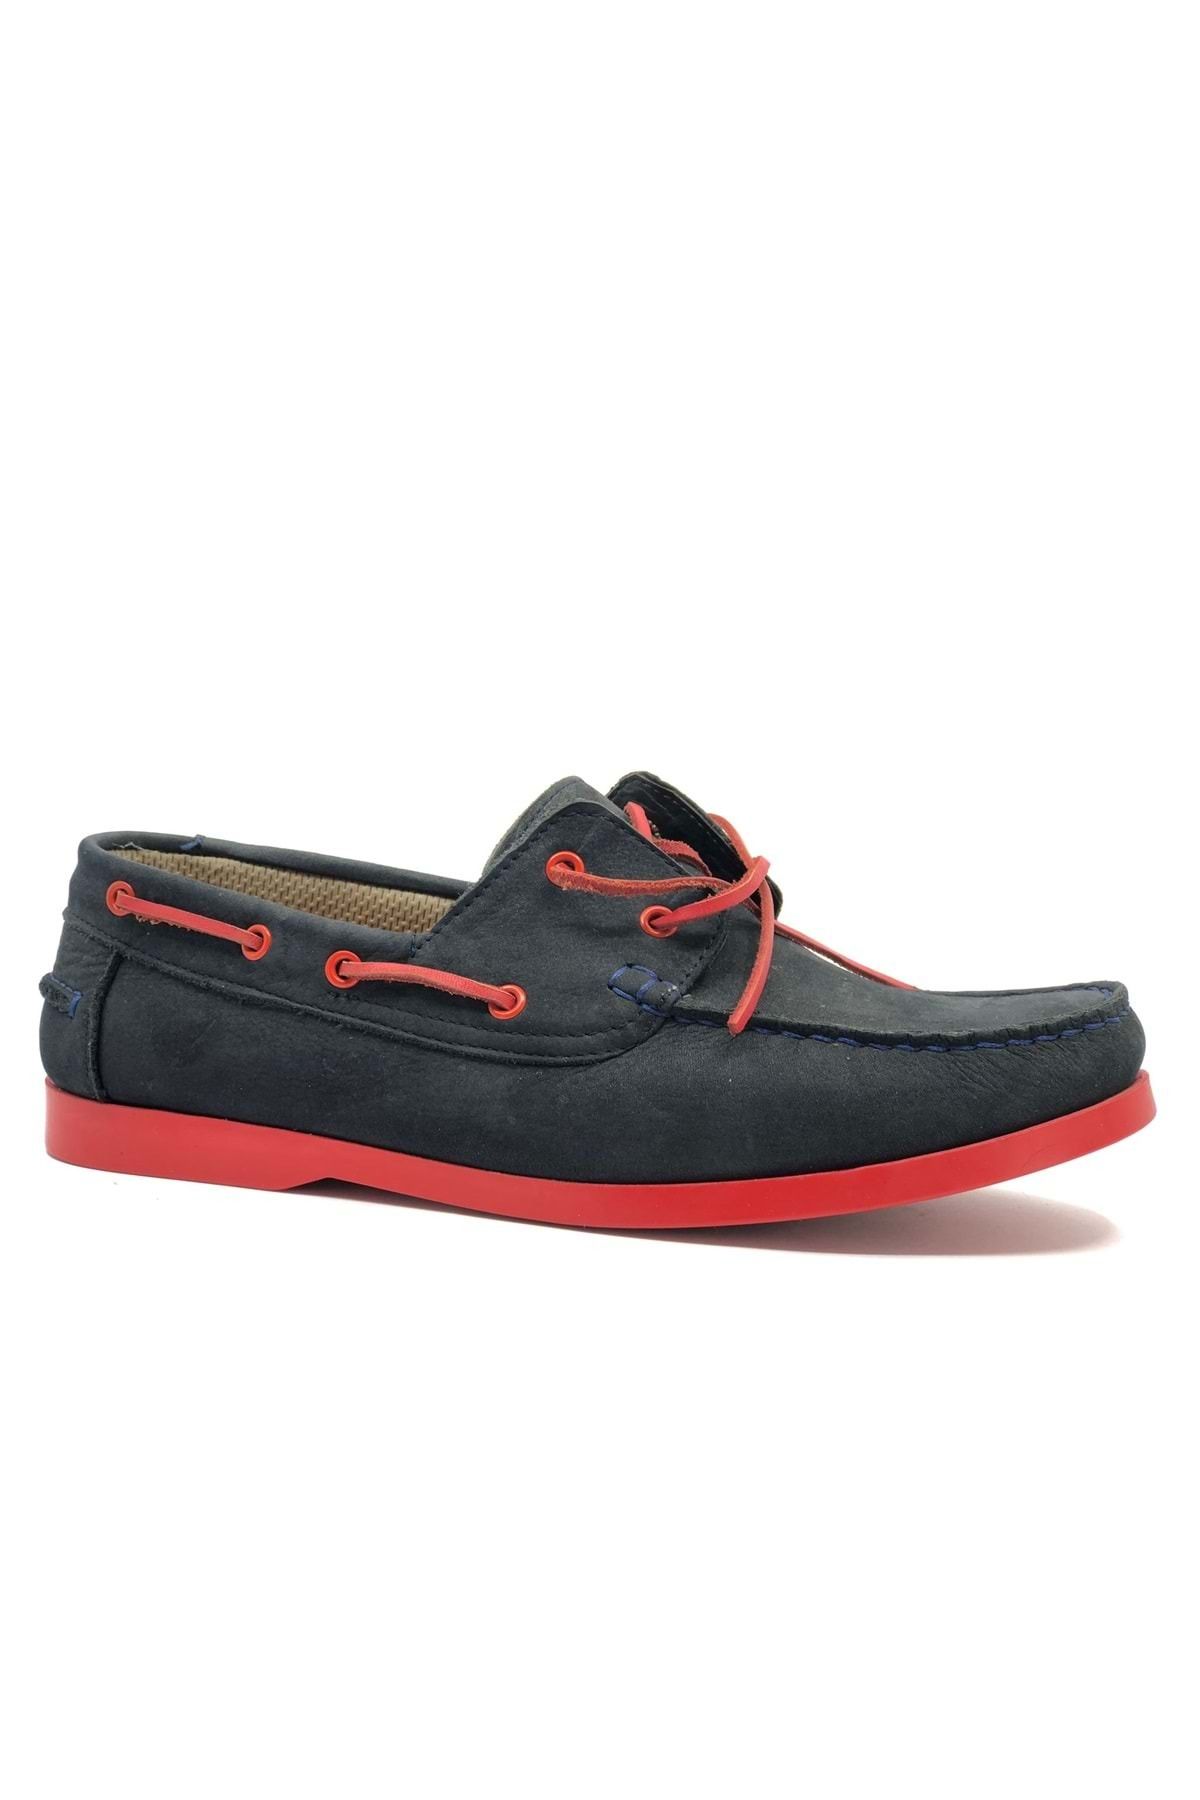 Kids Club Shoes Hasem 18 Hakiki Deri 45 Numara Özel Üretim Erkek Klasik Ayakkabı LACİVERT